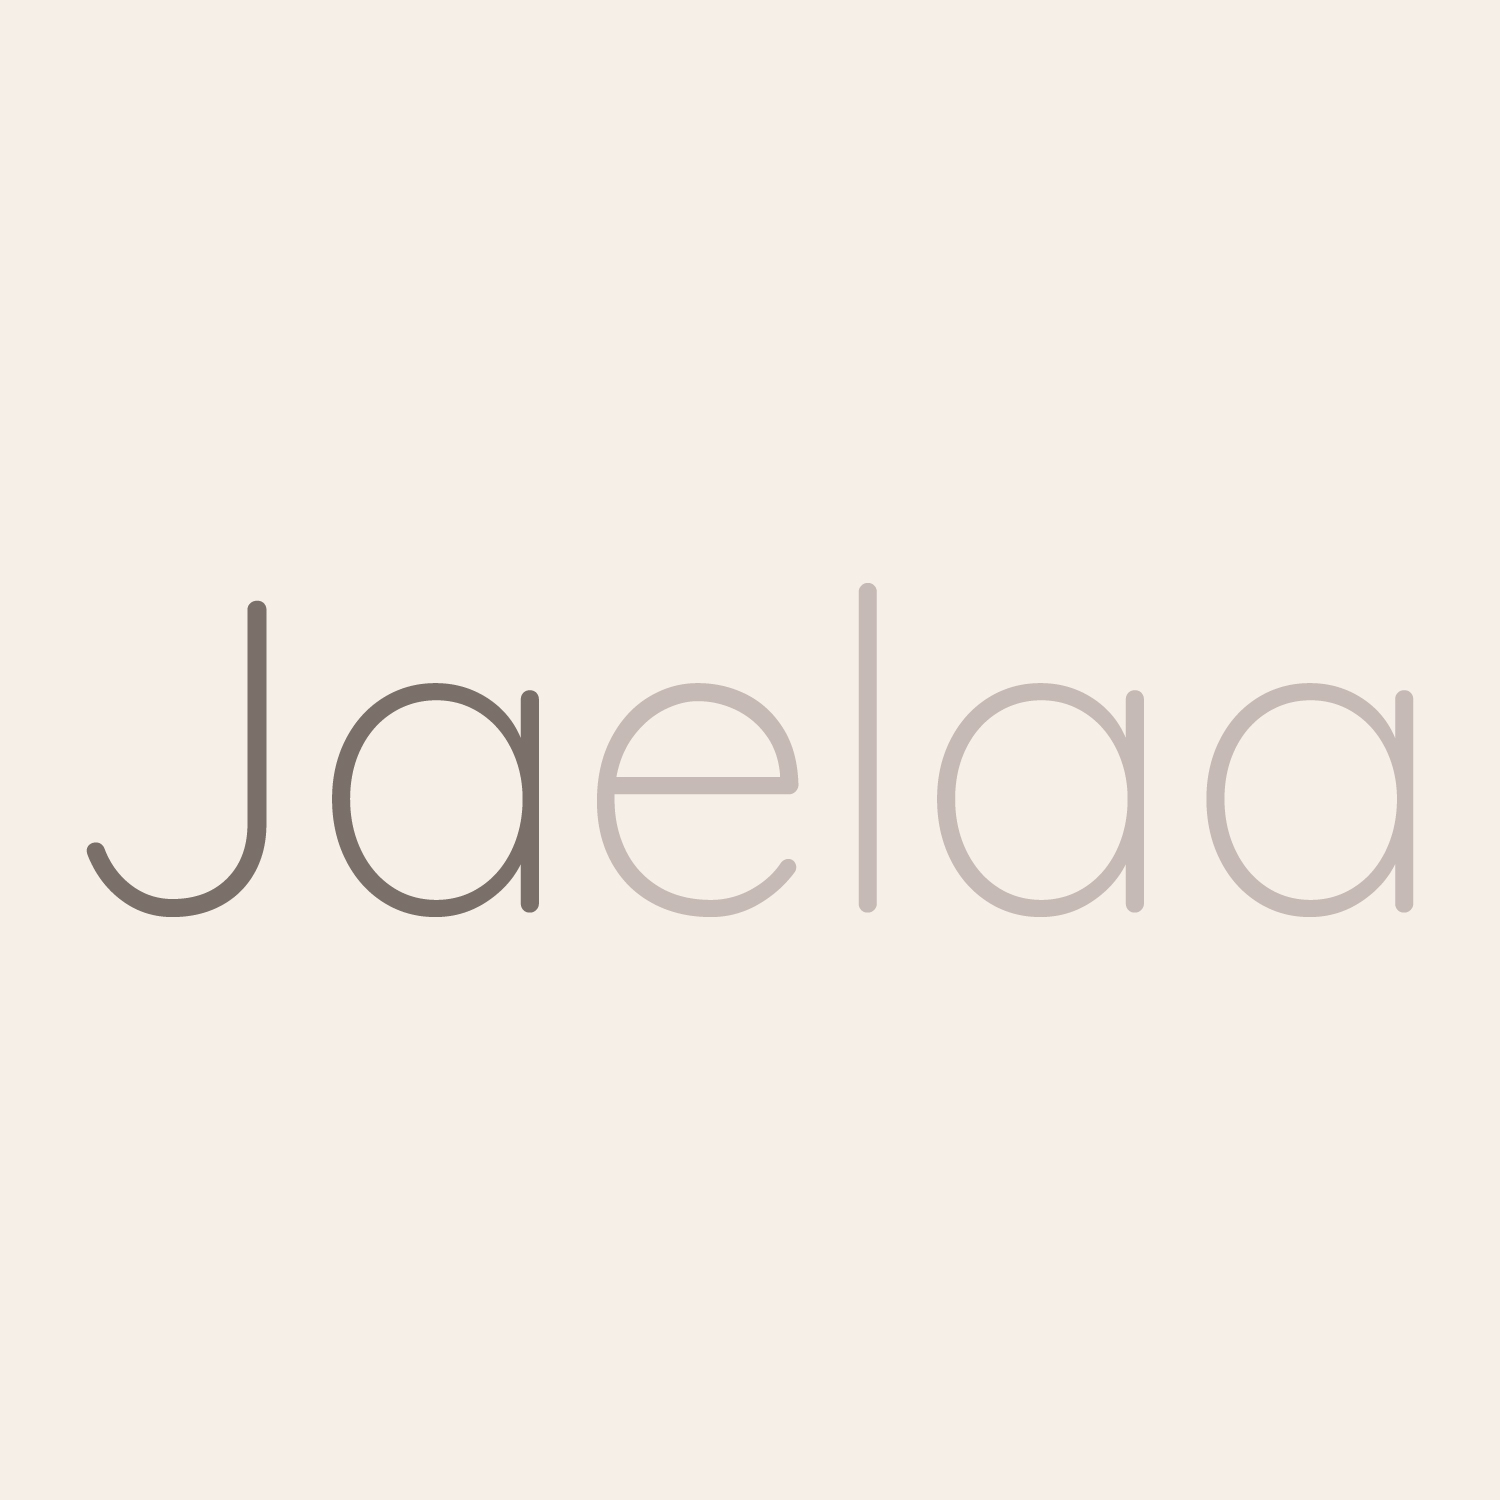 Jaelaa